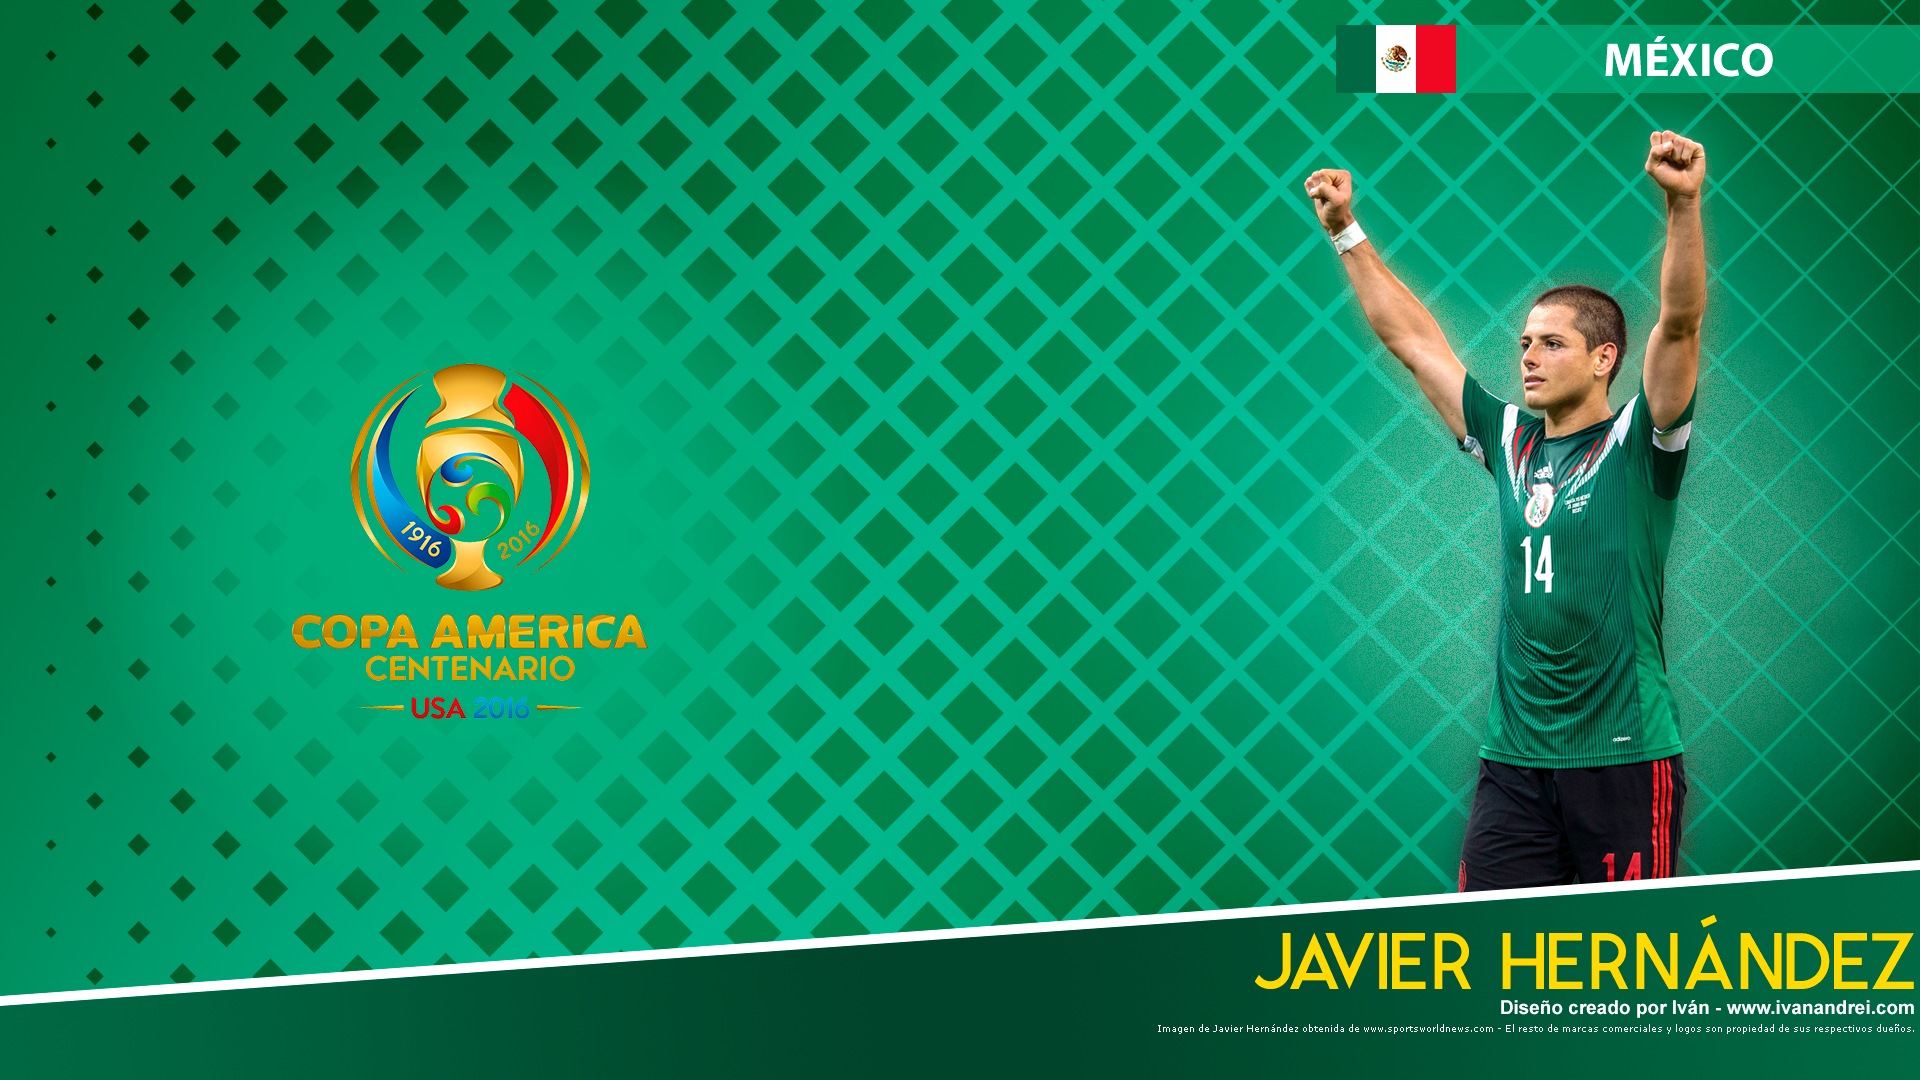 Copa América Centenario USA 2016 - México (Javier Hernández - 1920x1080)